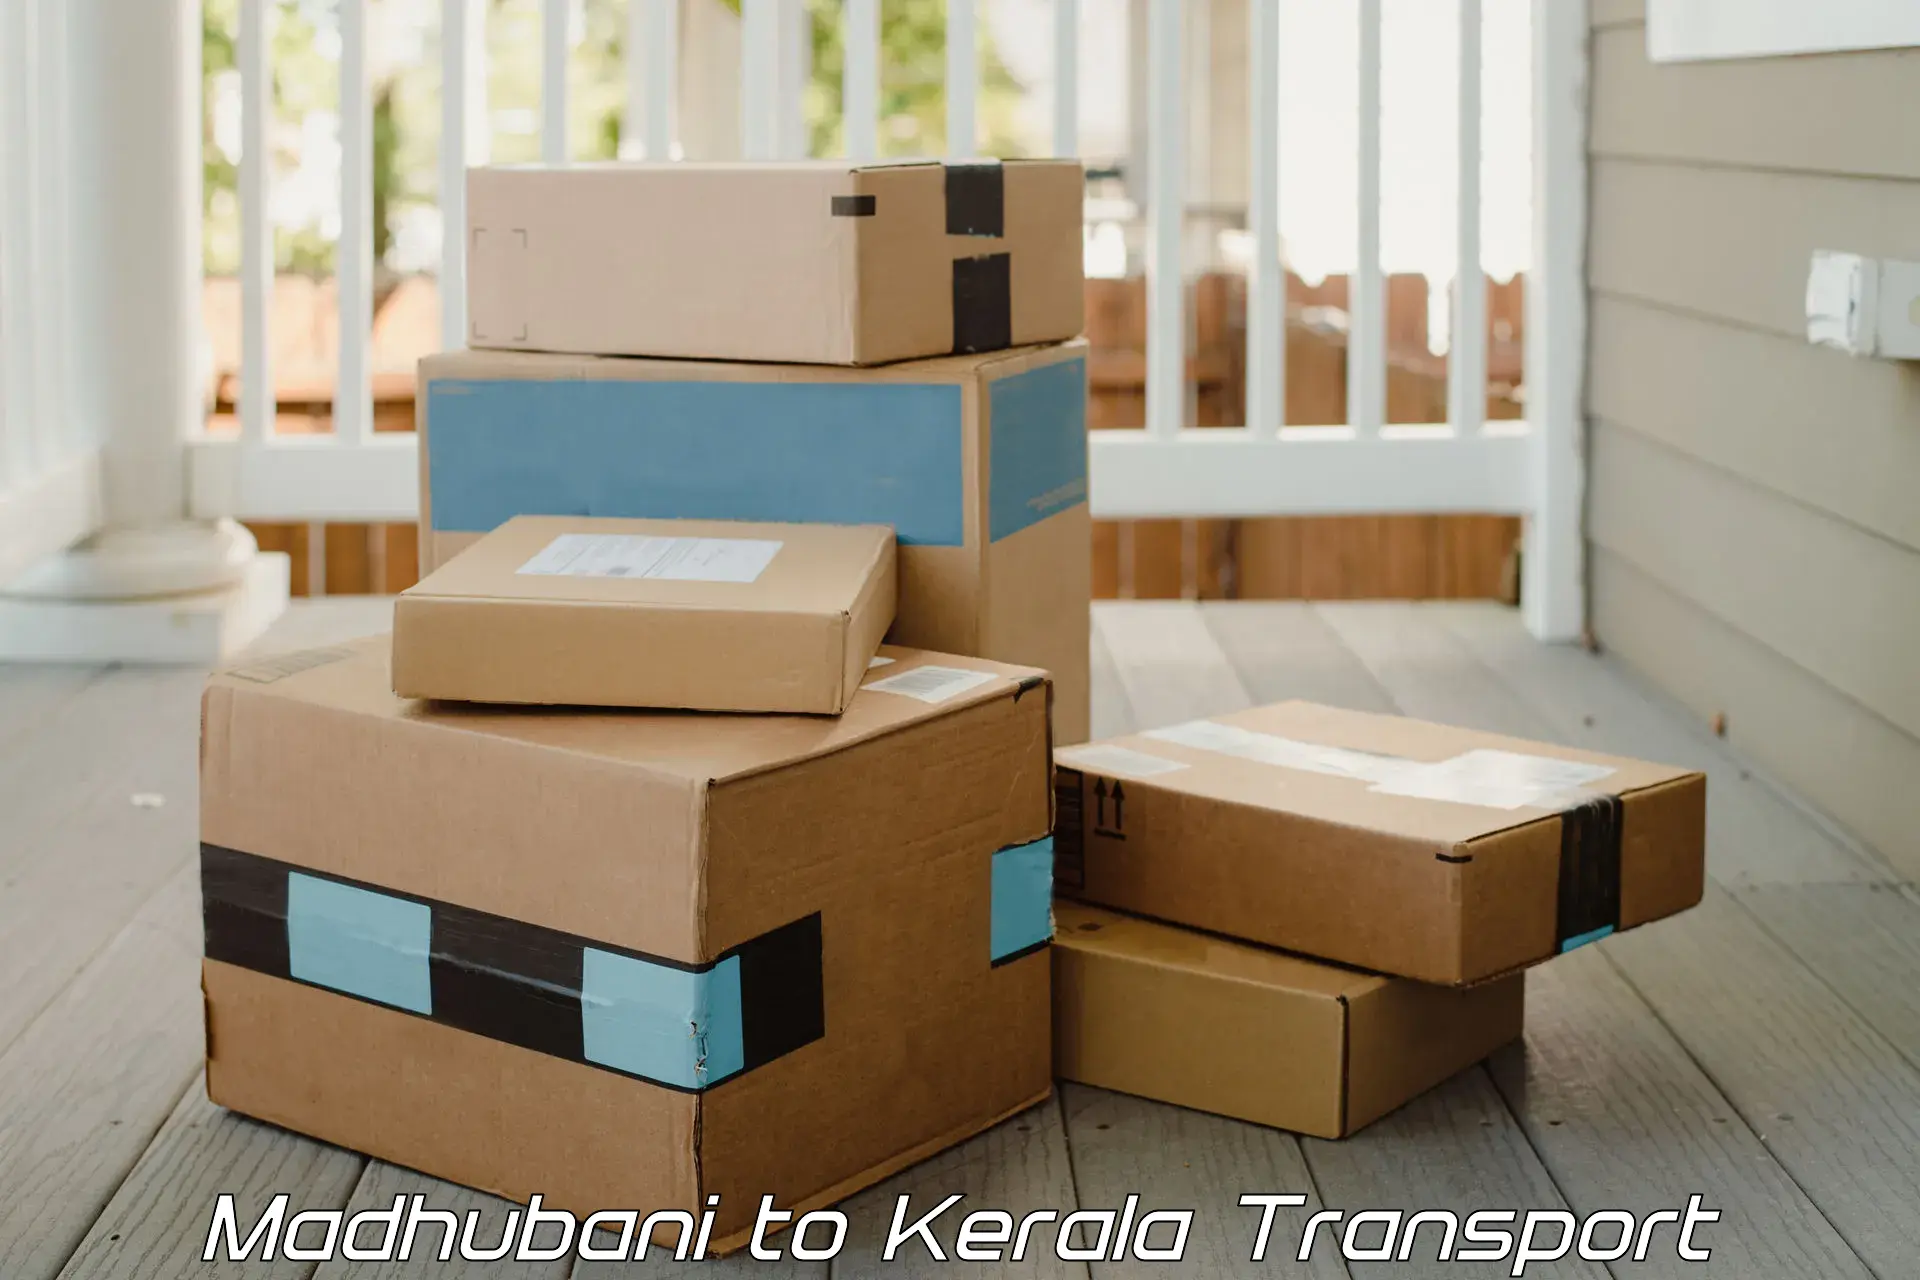 Online transport booking Madhubani to Kakkur